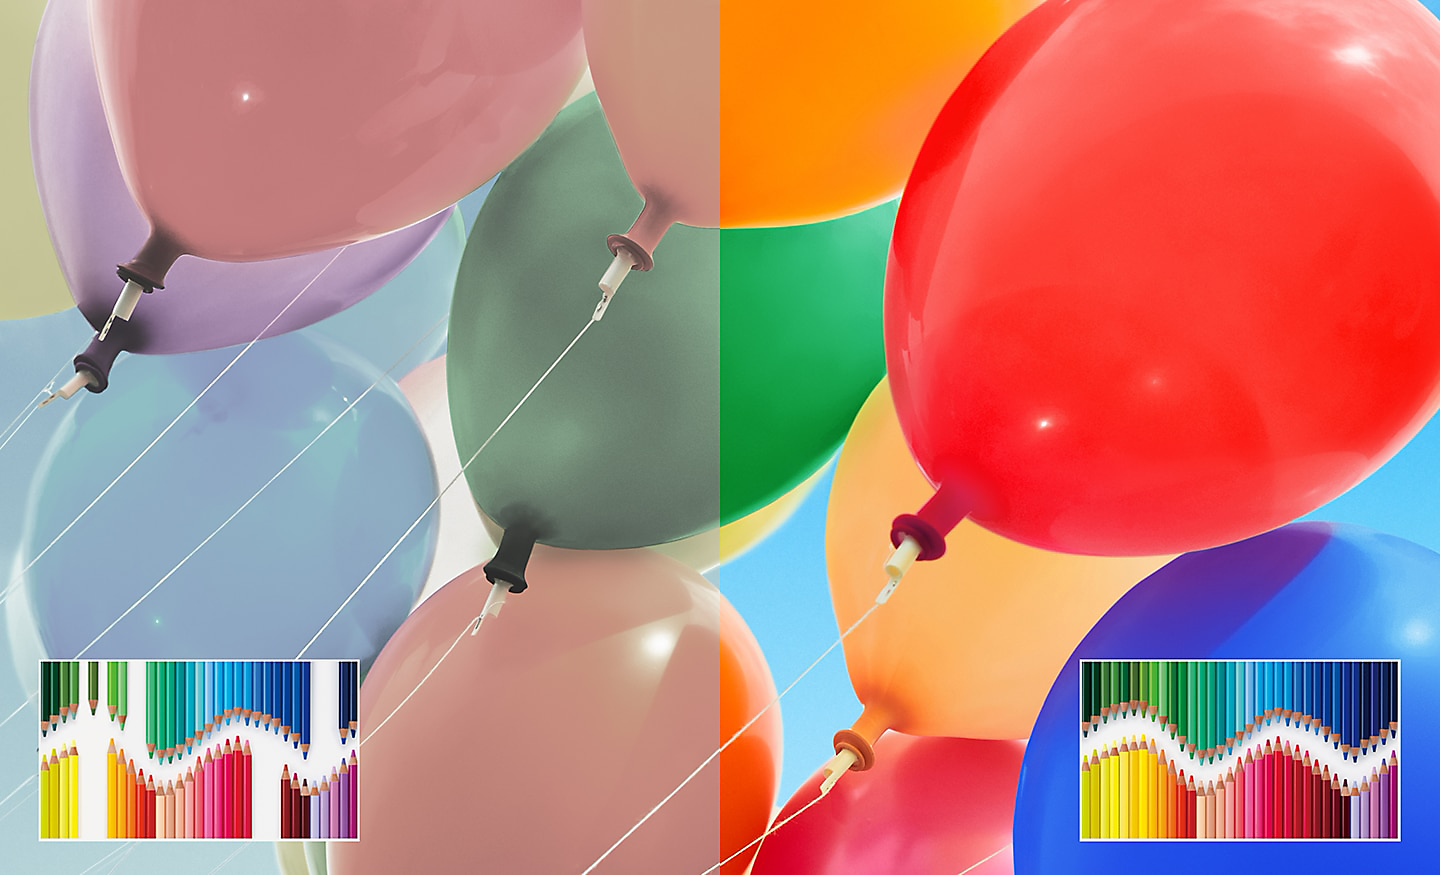 Razdeljena slika večbarvnih balonov, ki na desni strani prikazuje izboljšana svetlost in kontrast